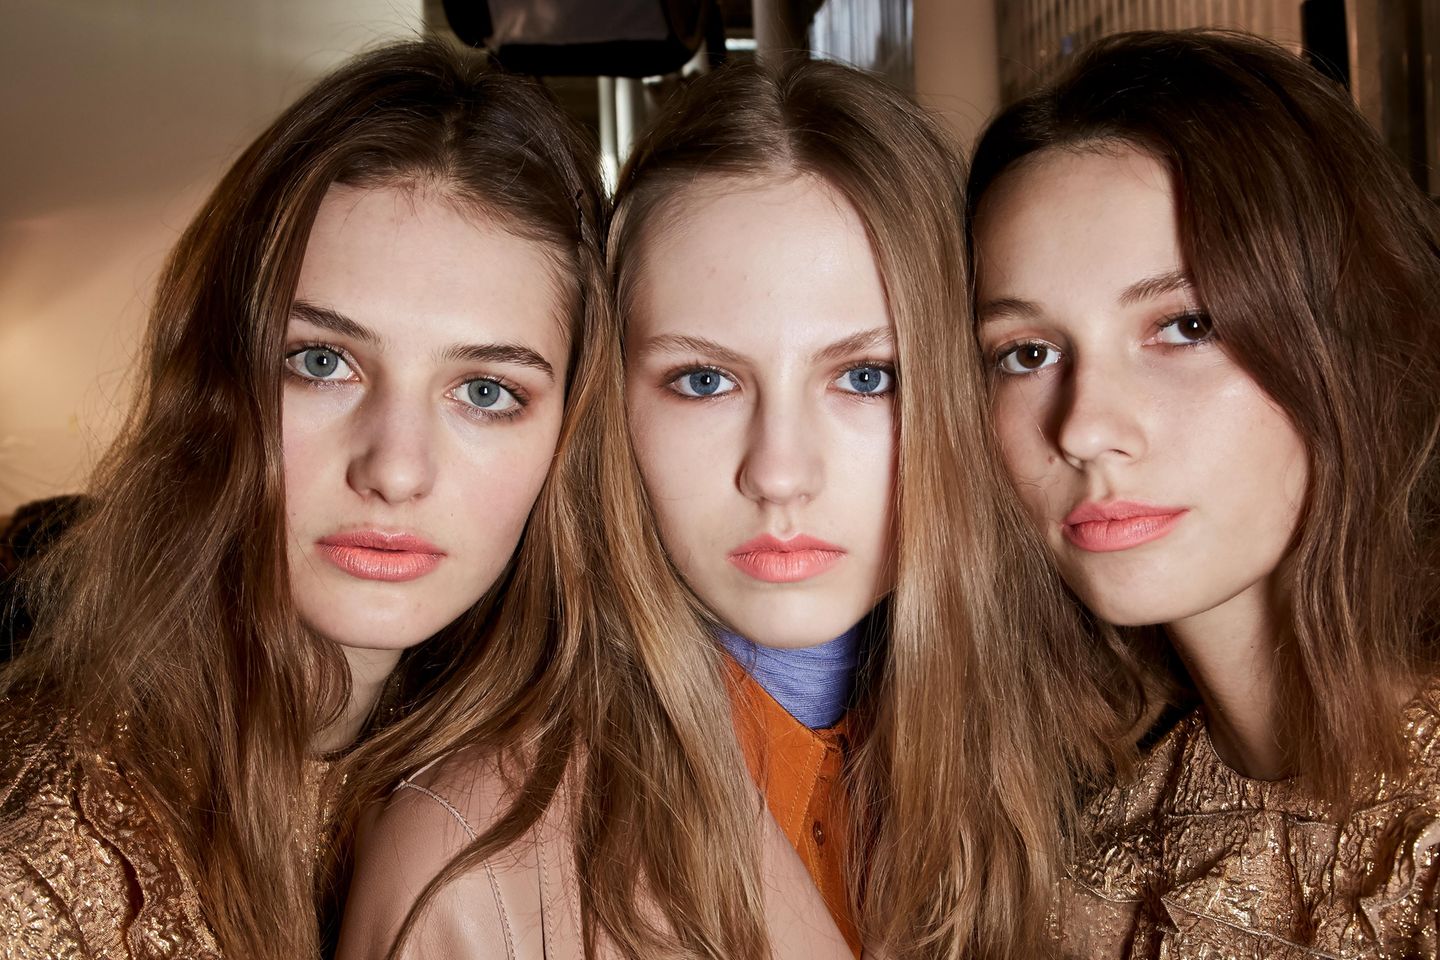 Herbst-Make-up-Trend: Oranger Lippenstift bei Rochas